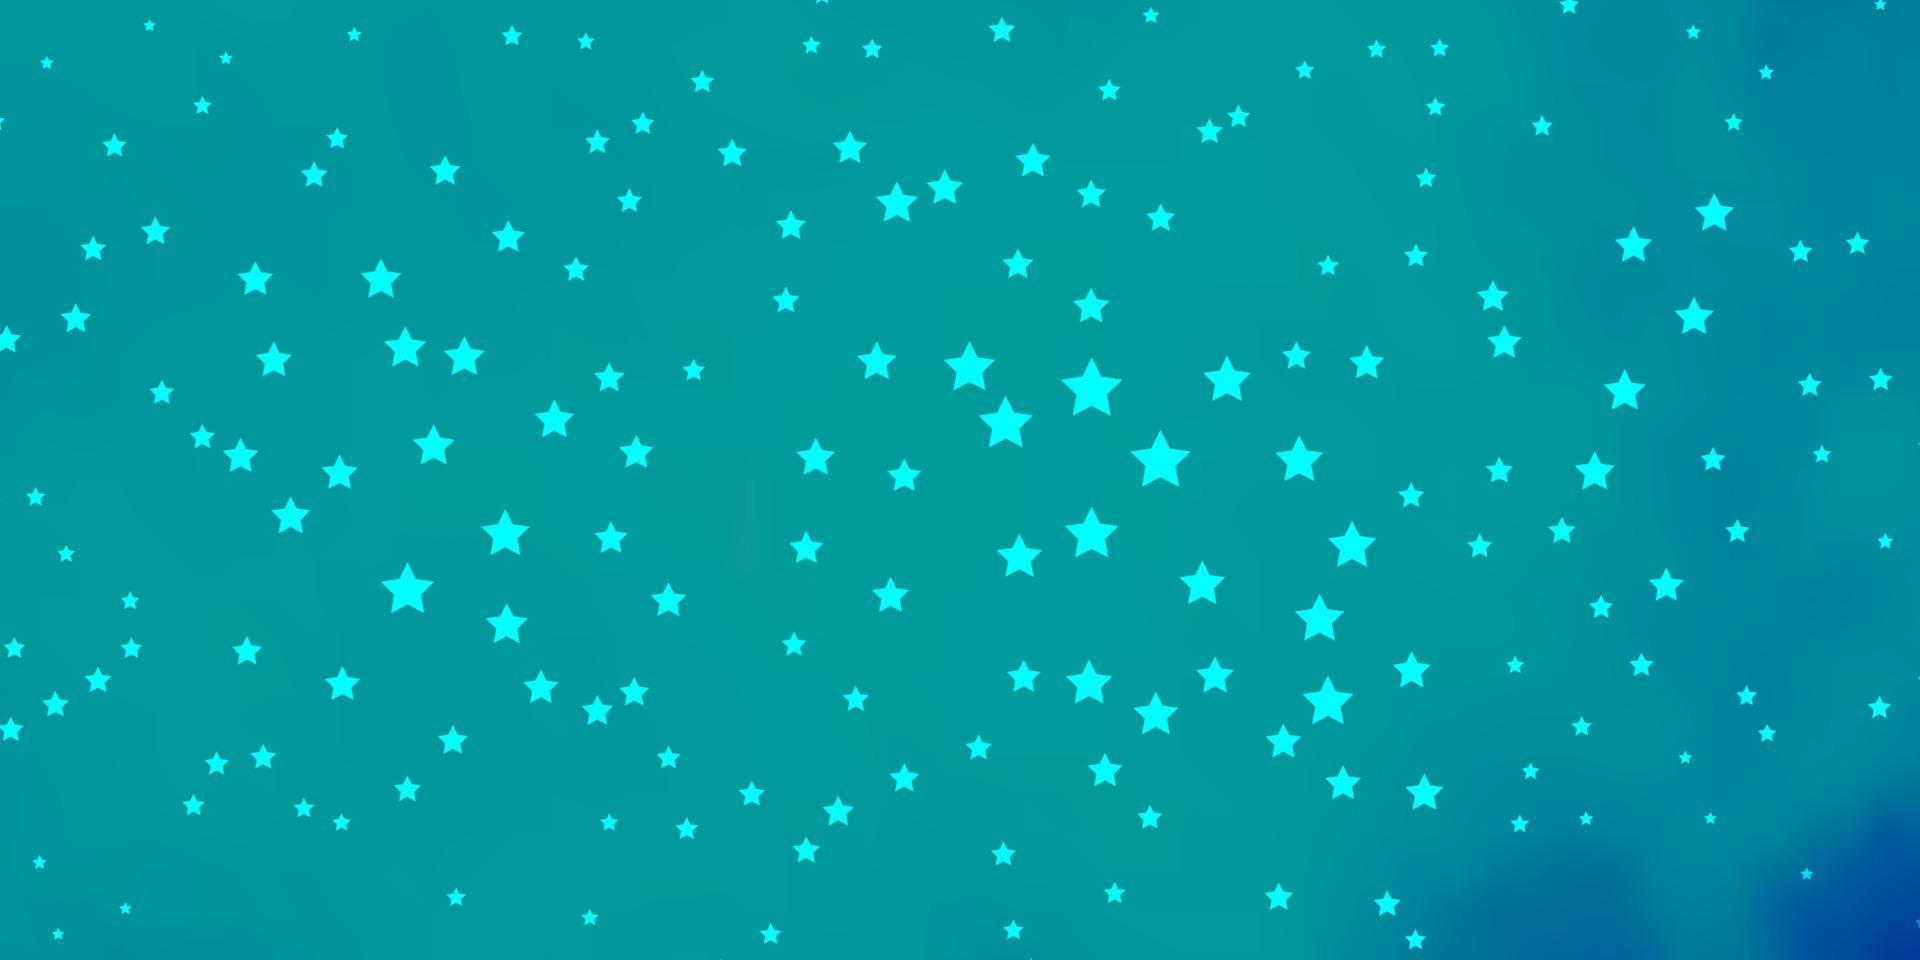 plantilla de vector azul oscuro con estrellas de neón.